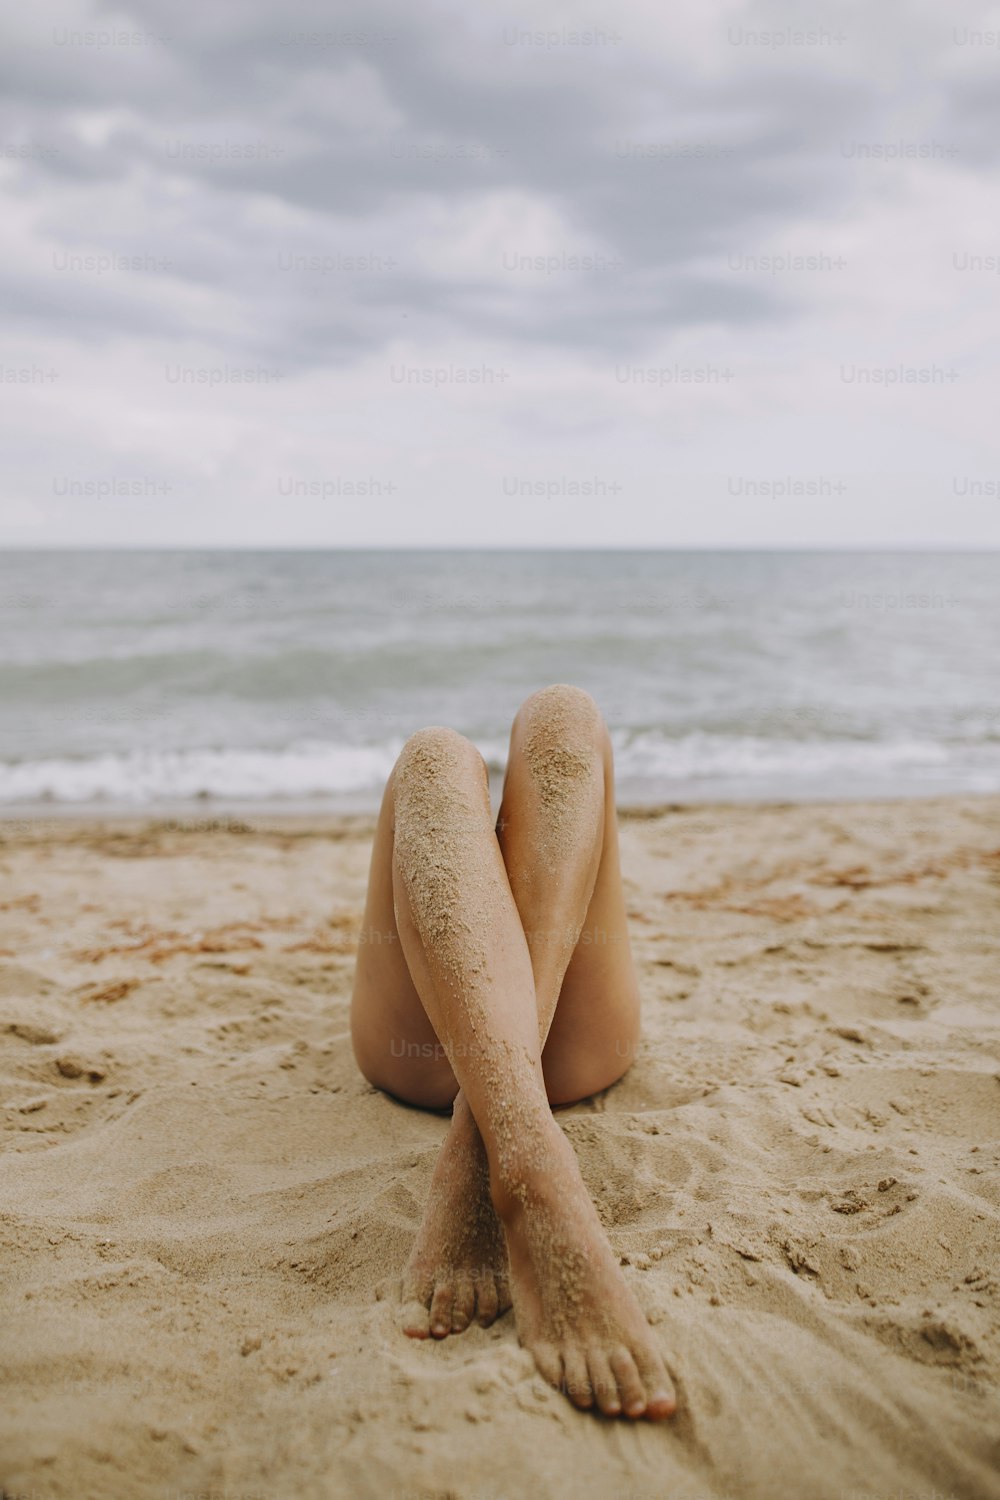 Gambe abbronzate femminili con sabbia su pelle liscia primo piano sulla spiaggia. Bella immagine autentica e creativa. Giovane donna che si rilassa in riva al mare. Vacanze estive. Cura dei piedi